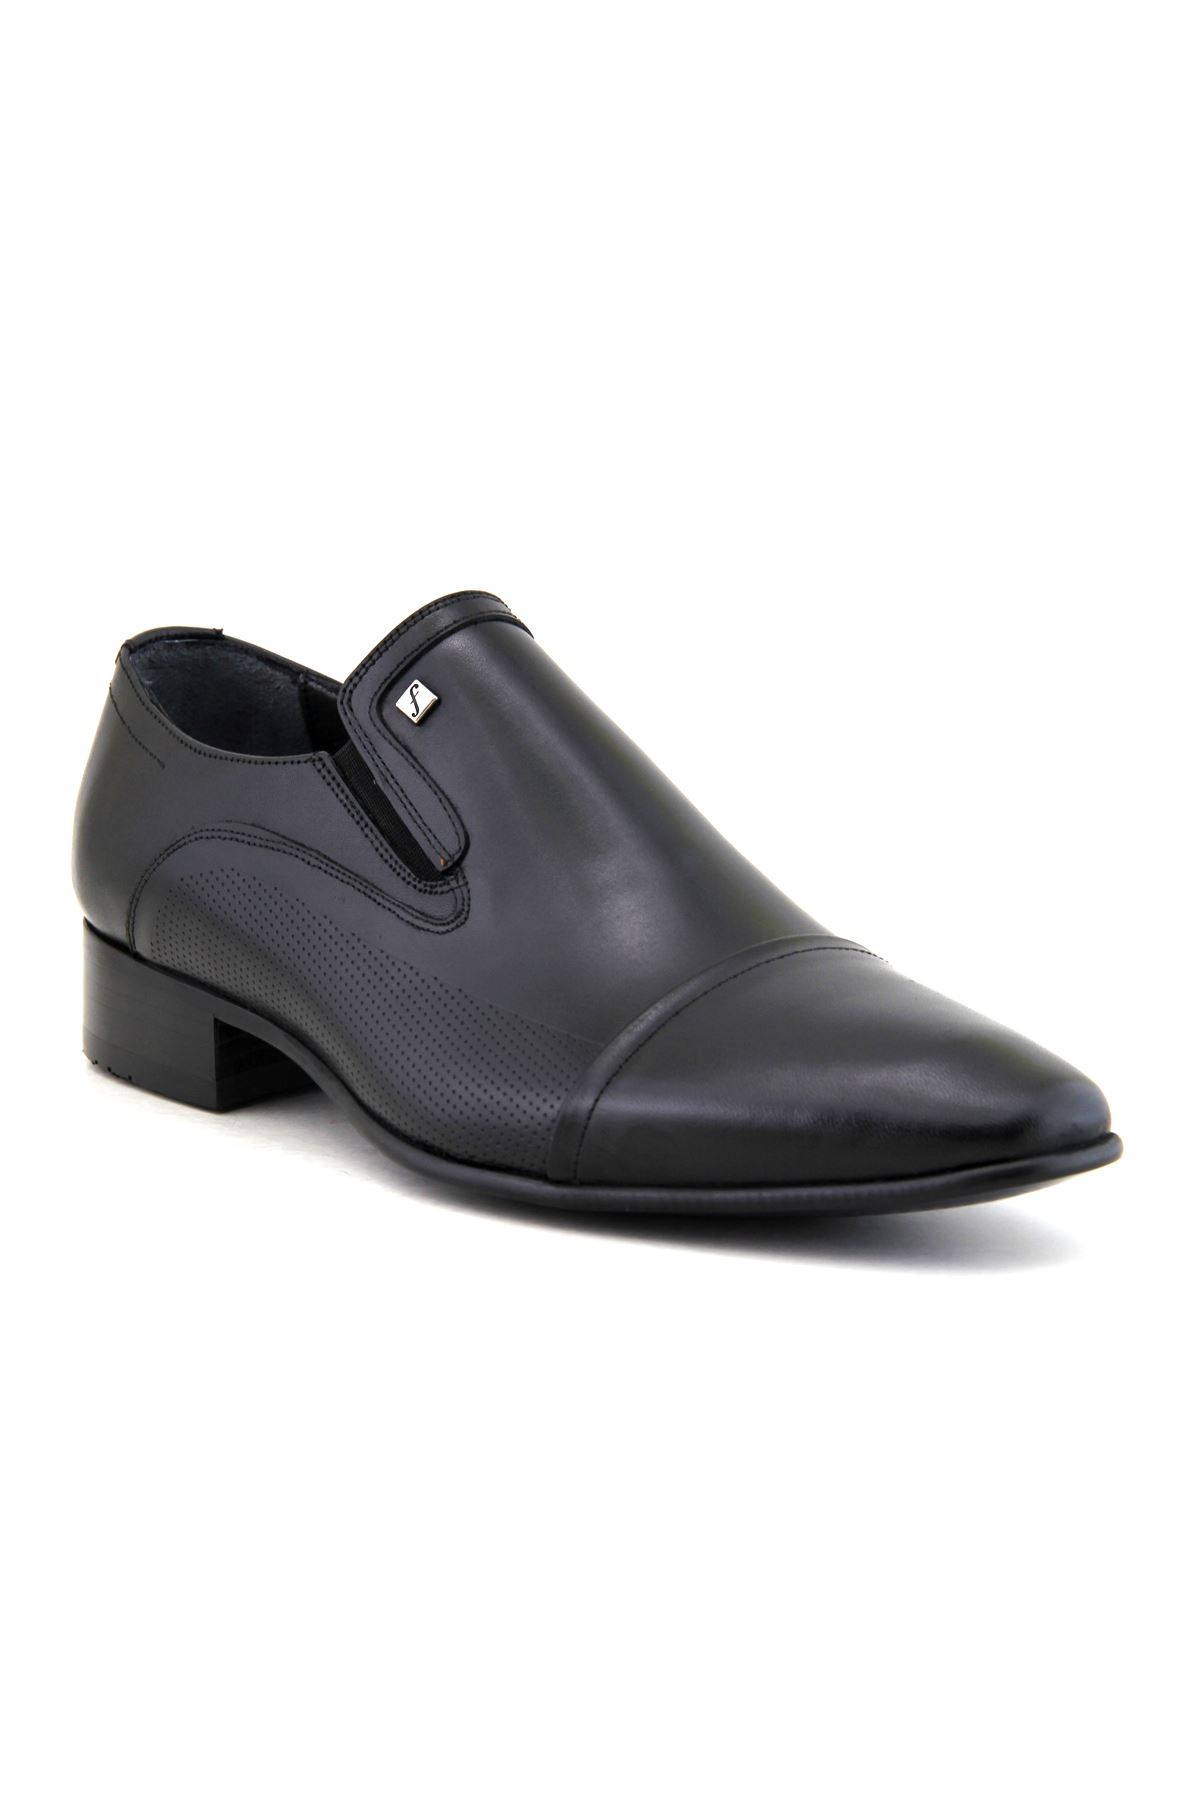 Fosco 3015 Hakiki Deri Klasik Erkek Ayakkabı - Siyah